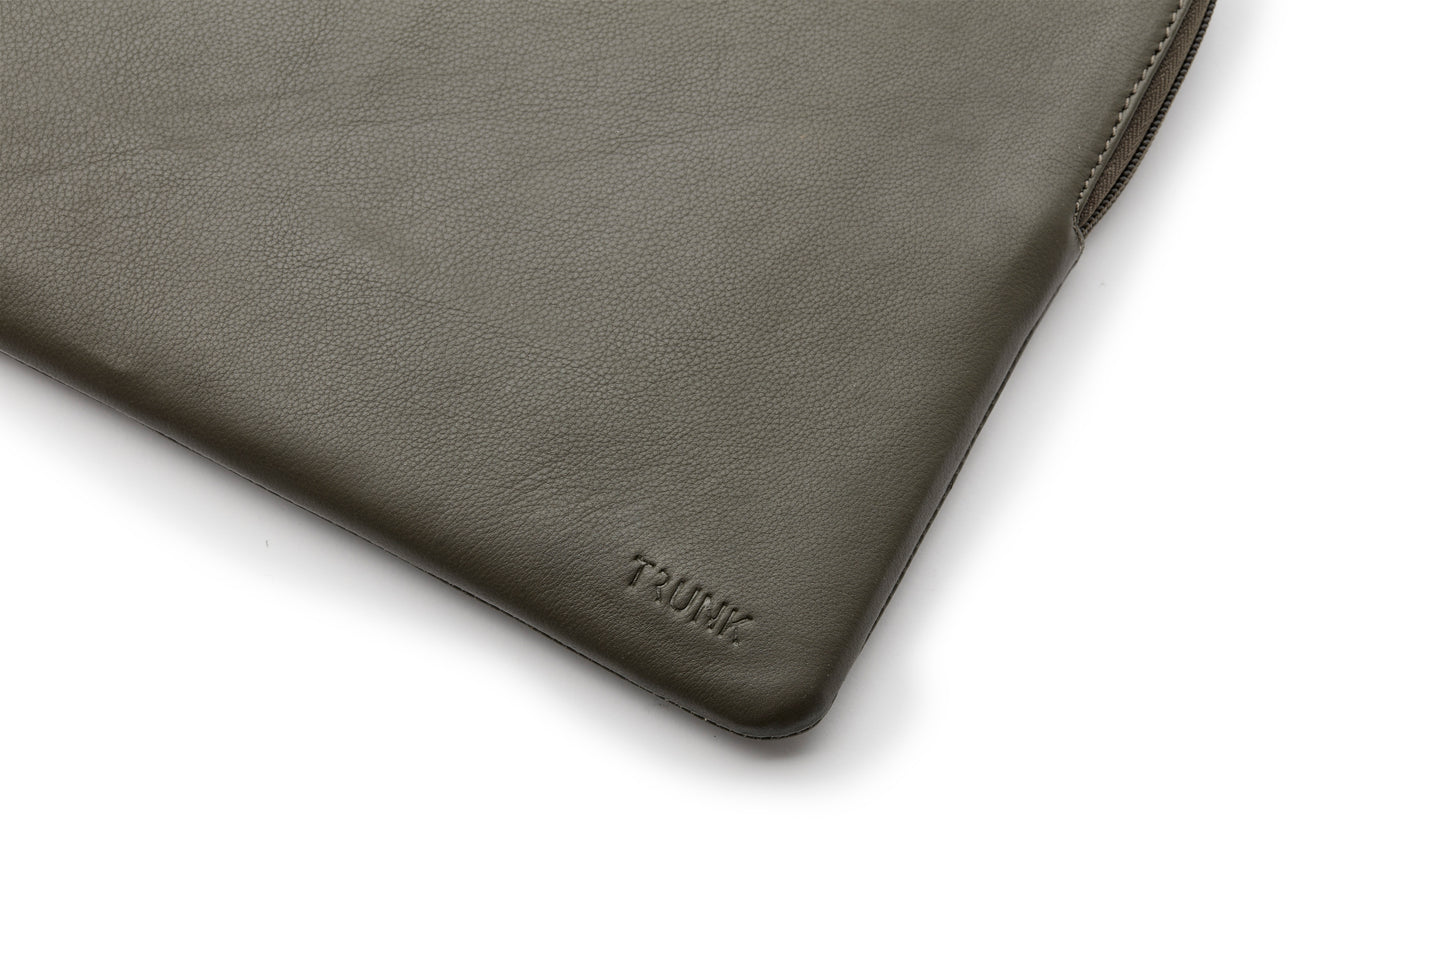 Trunk Leder Sleeve für MacBook Pro 13", Green